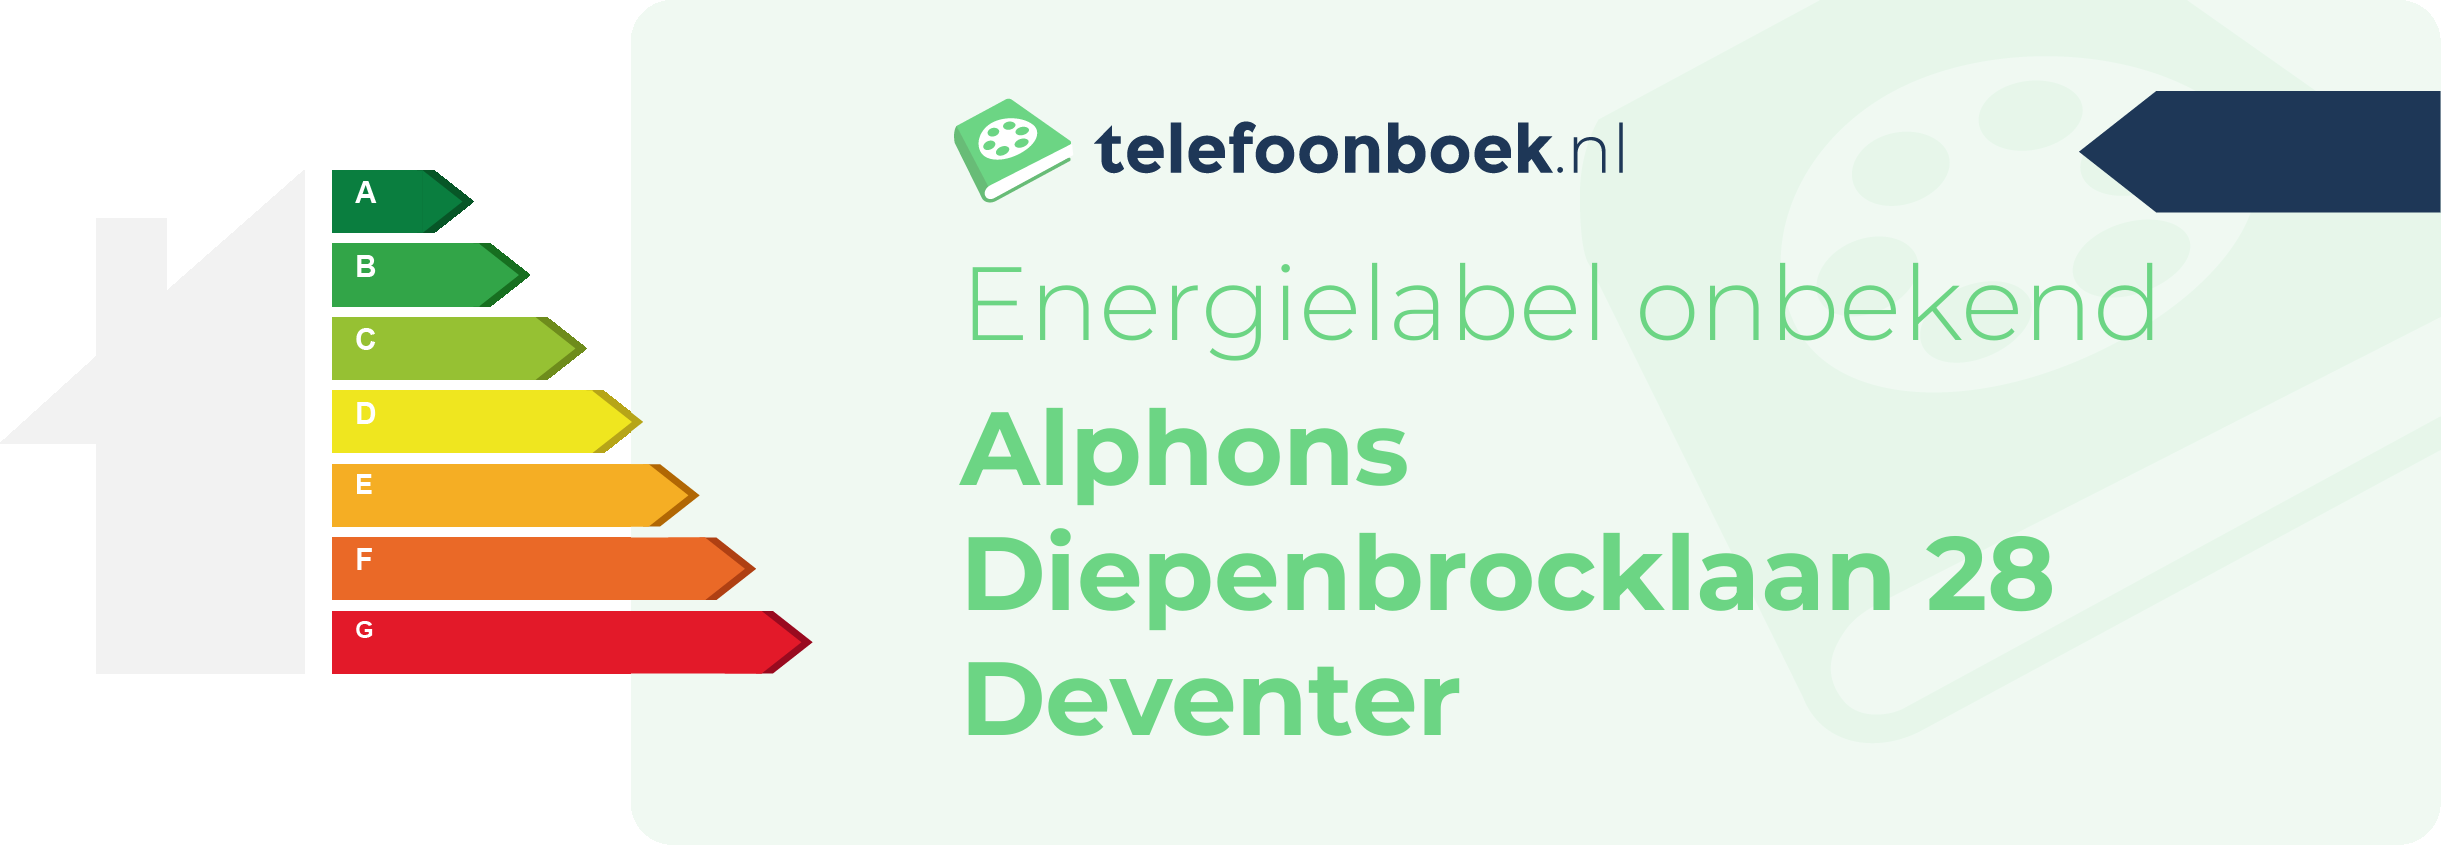 Energielabel Alphons Diepenbrocklaan 28 Deventer